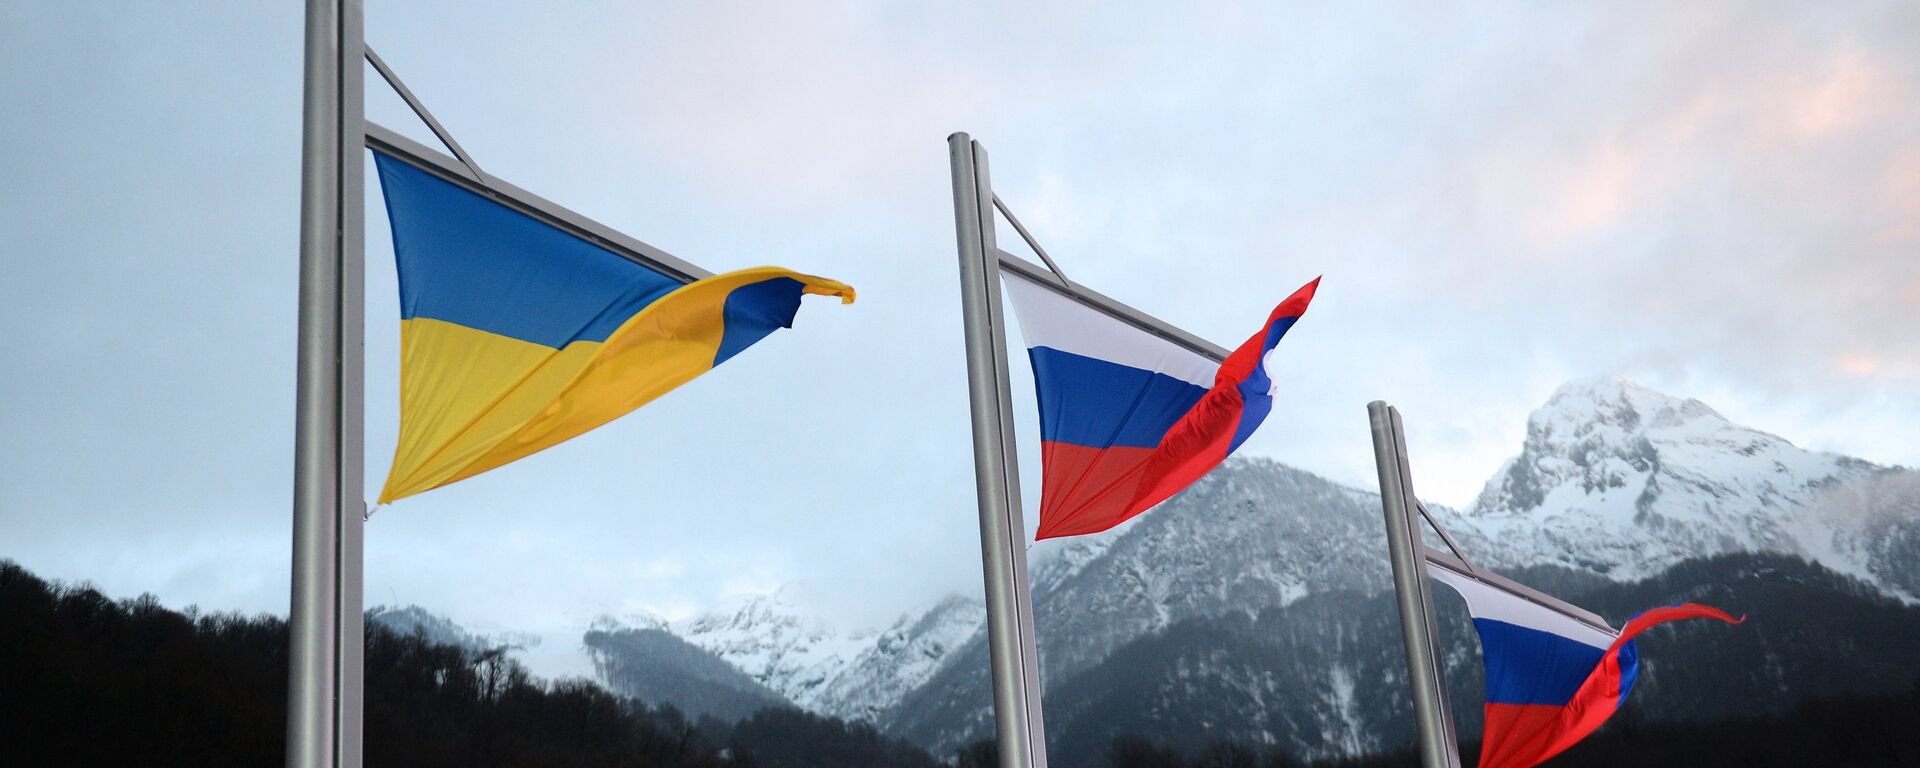 Banderas de Rusia y Ucrania - Sputnik Mundo, 1920, 21.12.2021